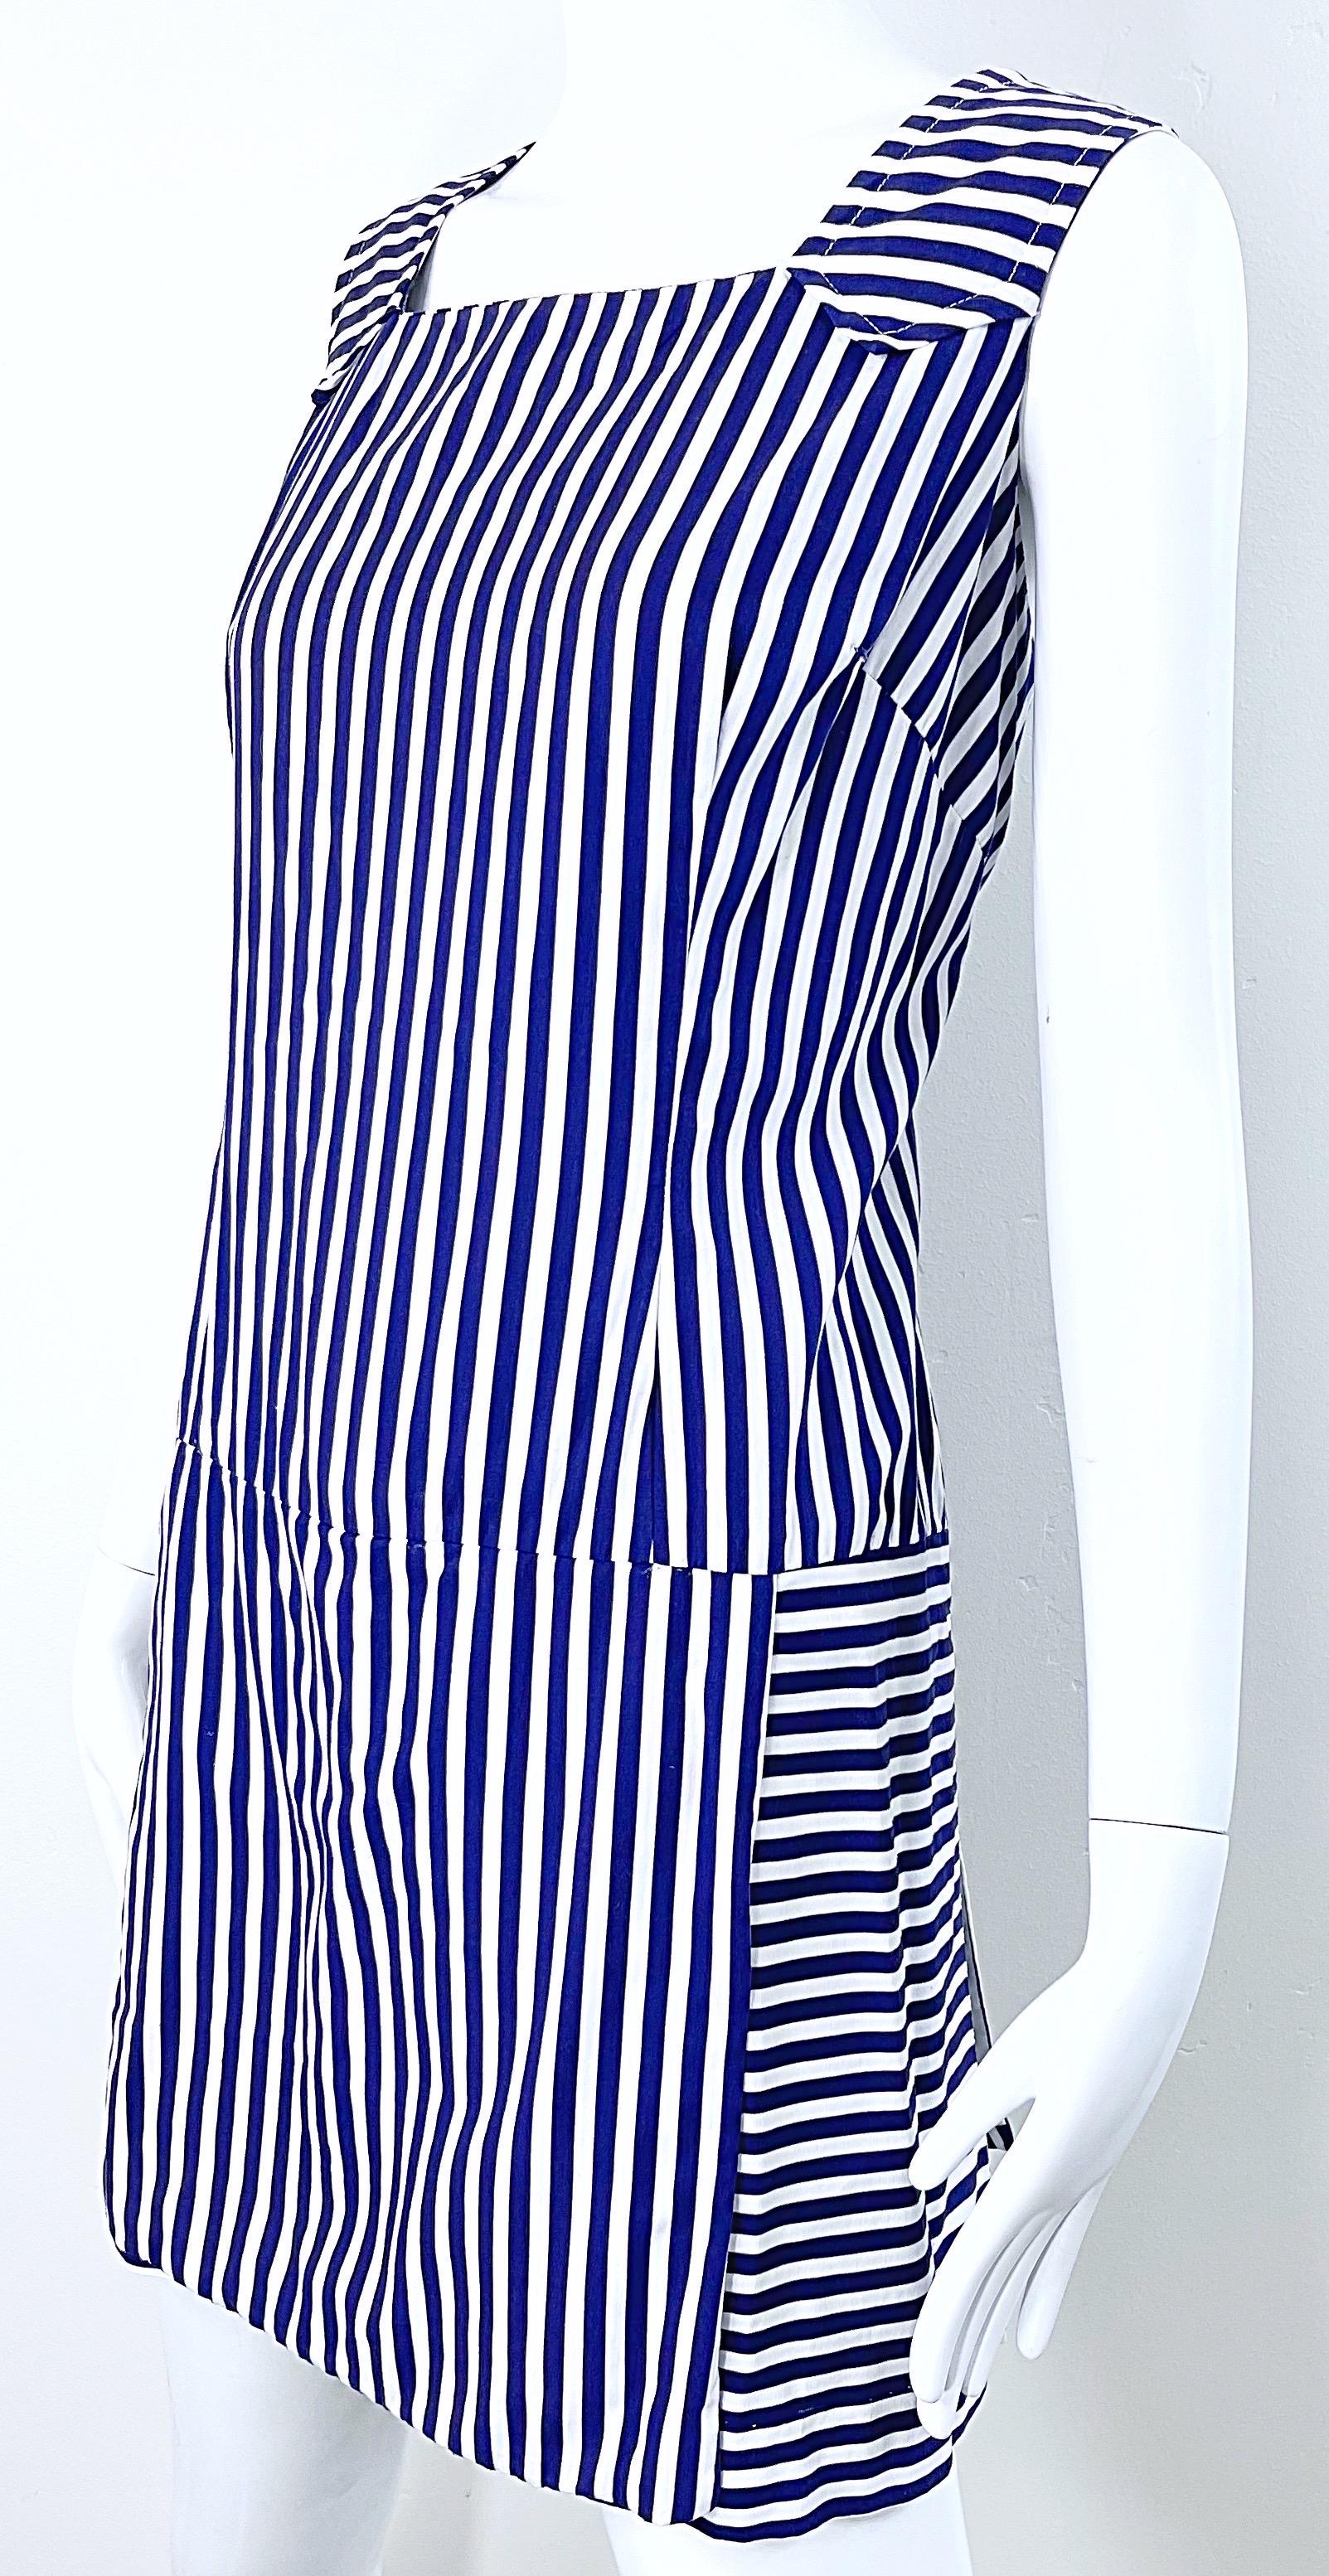 1960s Romper Large Size Navy + White Striped Cotton Vintage 60s Skort Dress For Sale 1